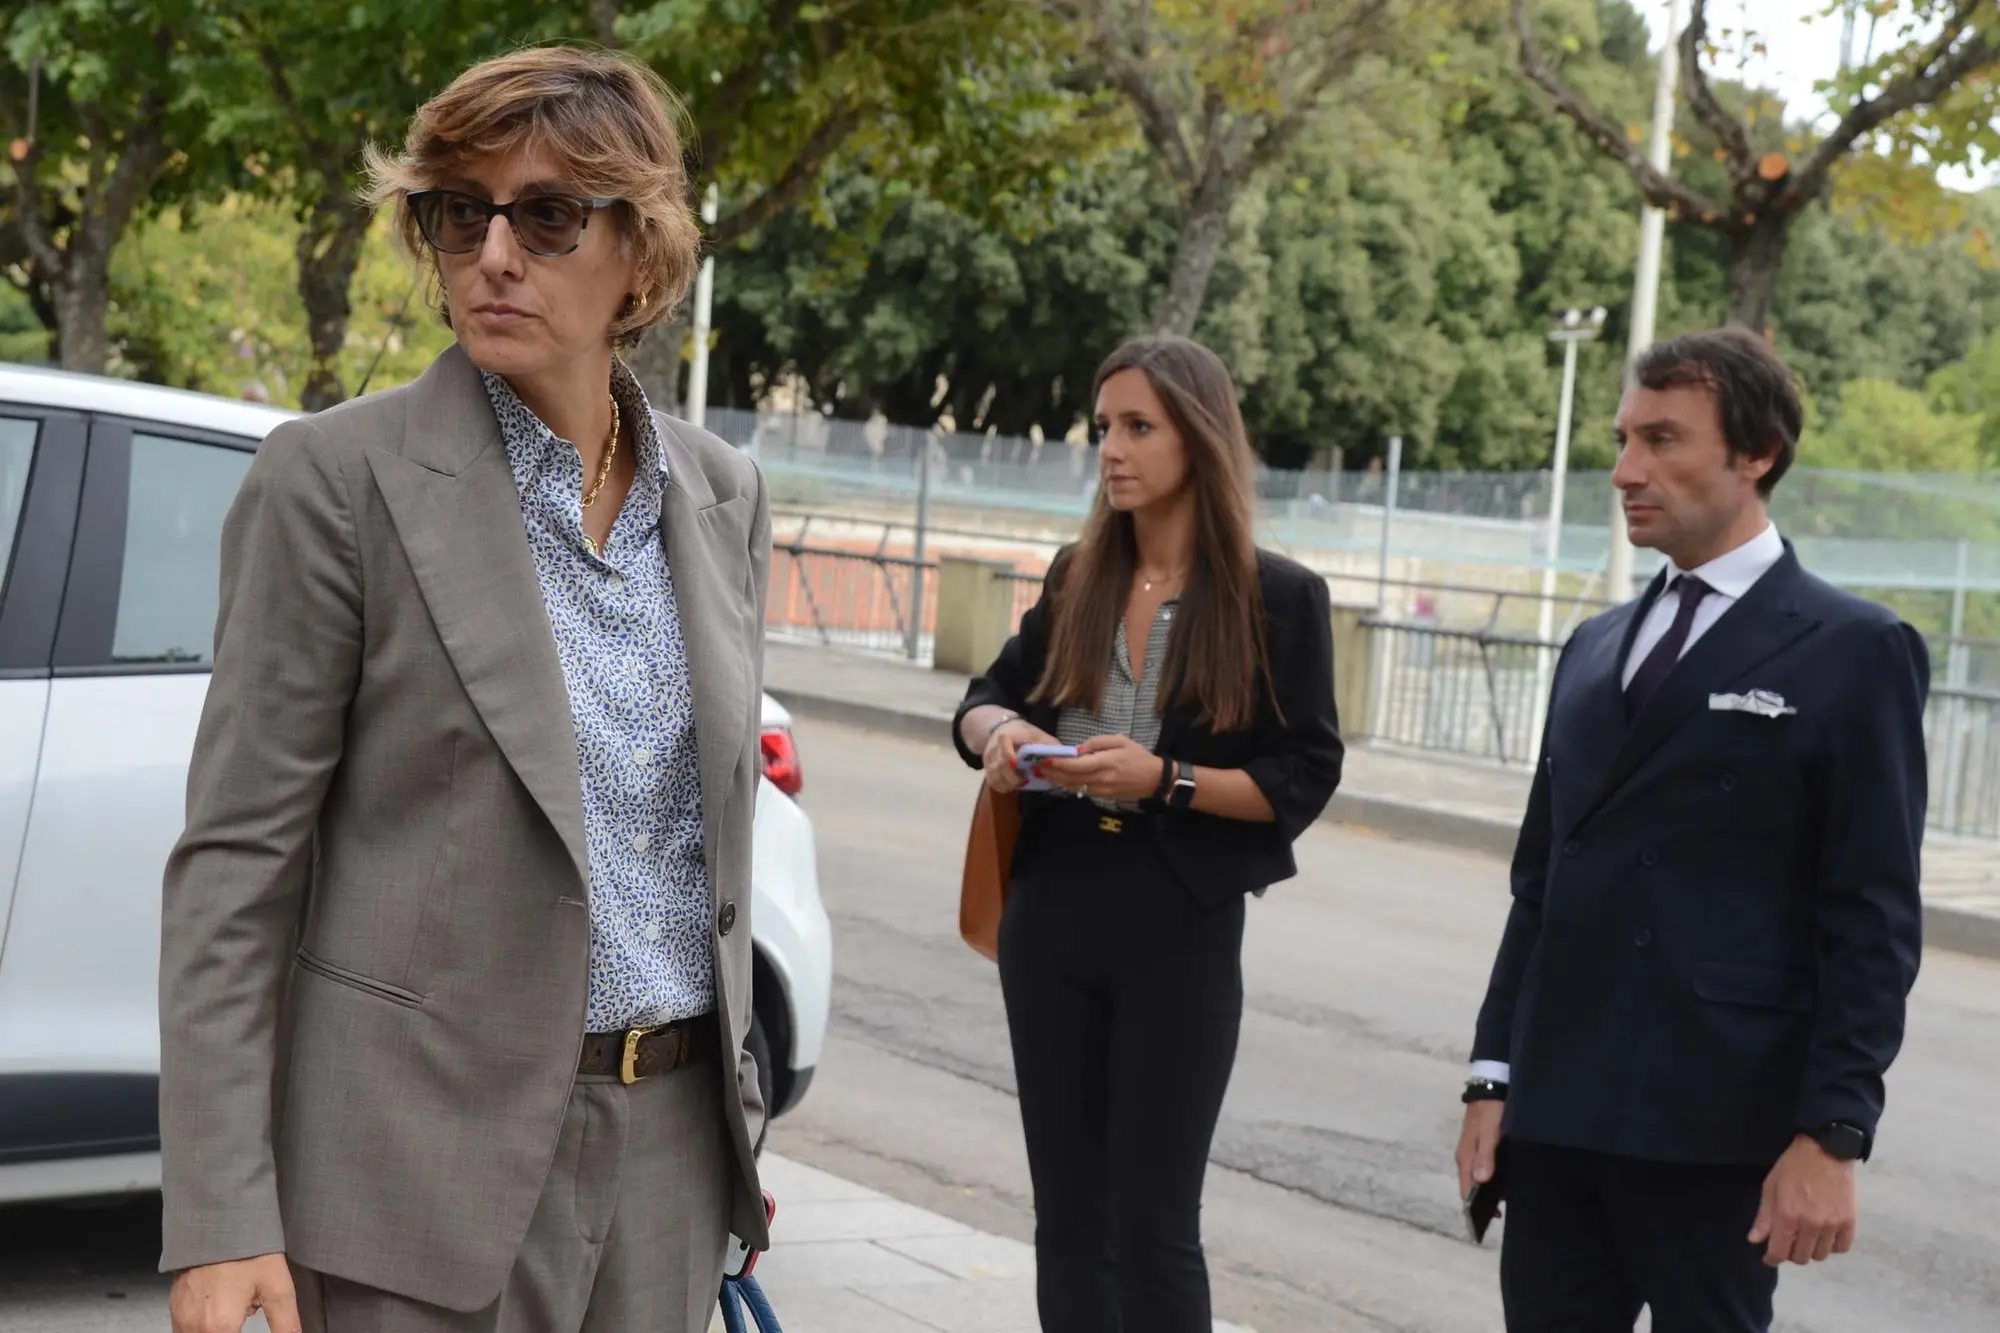 Giulia Bongiorno, avvocato che difende la presunta vittima (Foto Satta)